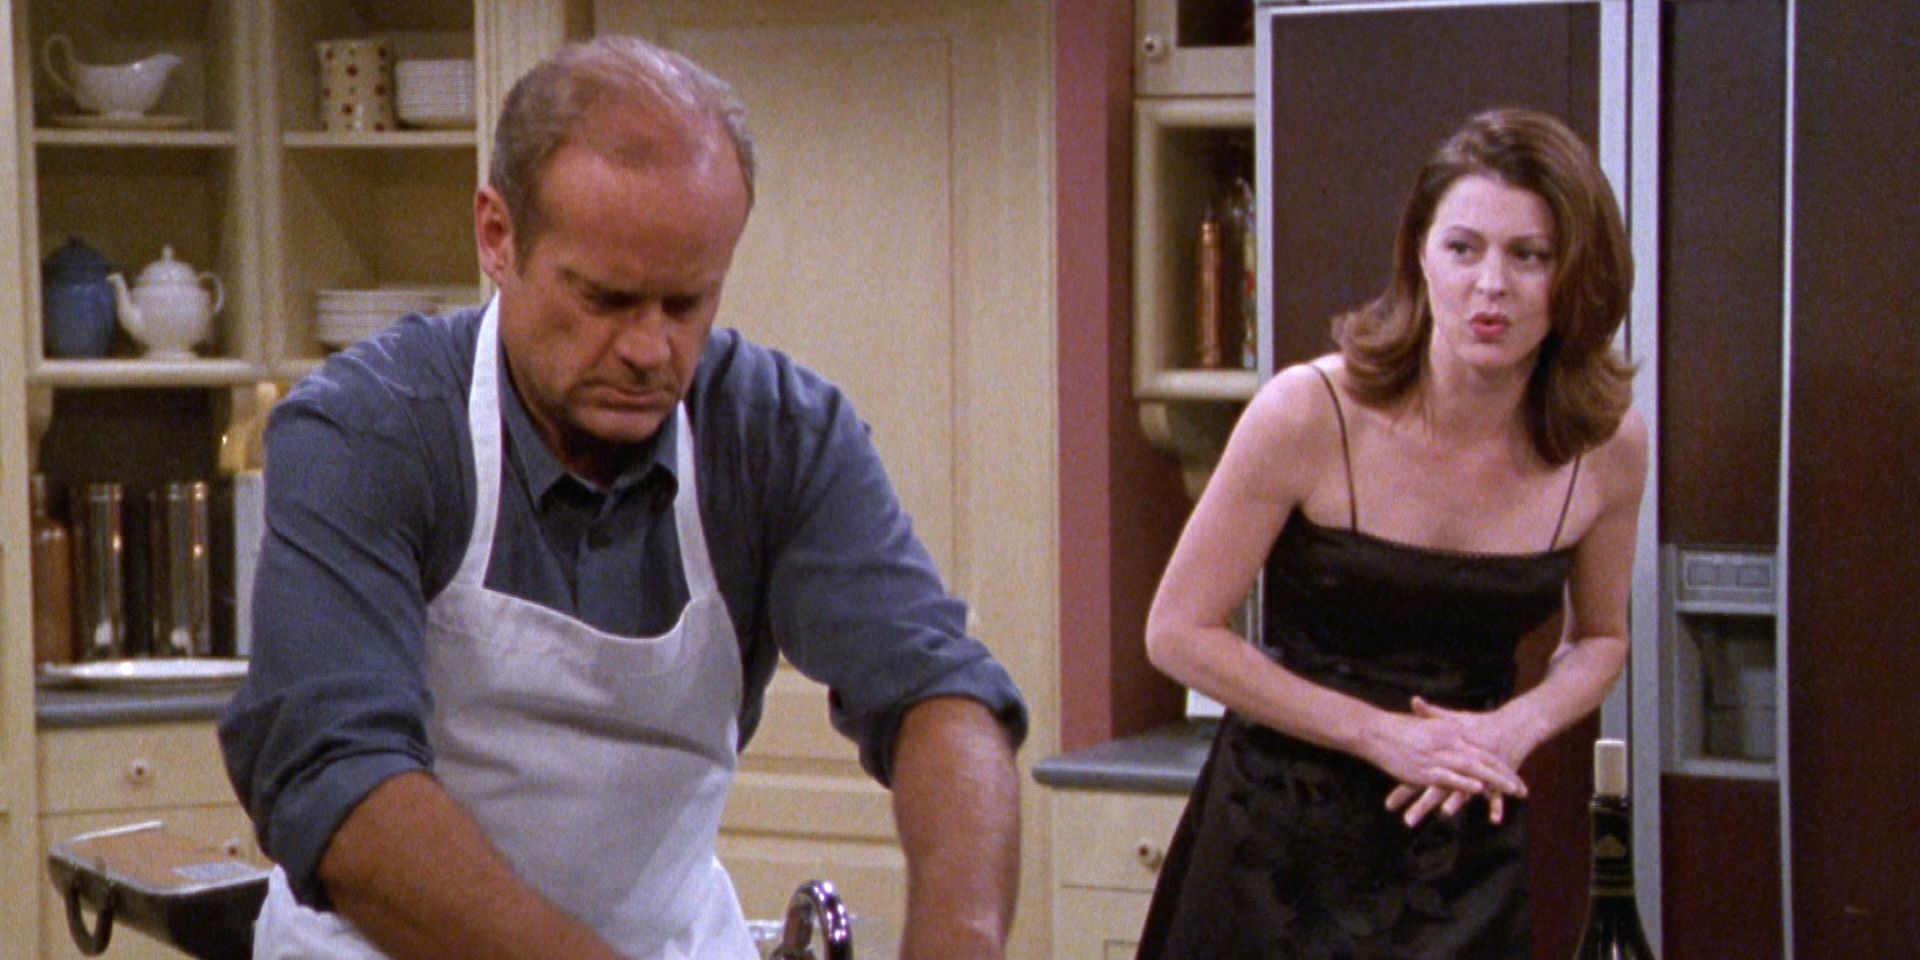 Frasier Crane cooks for Daphne Crane in "Daphne Does Dinner" on Frasier